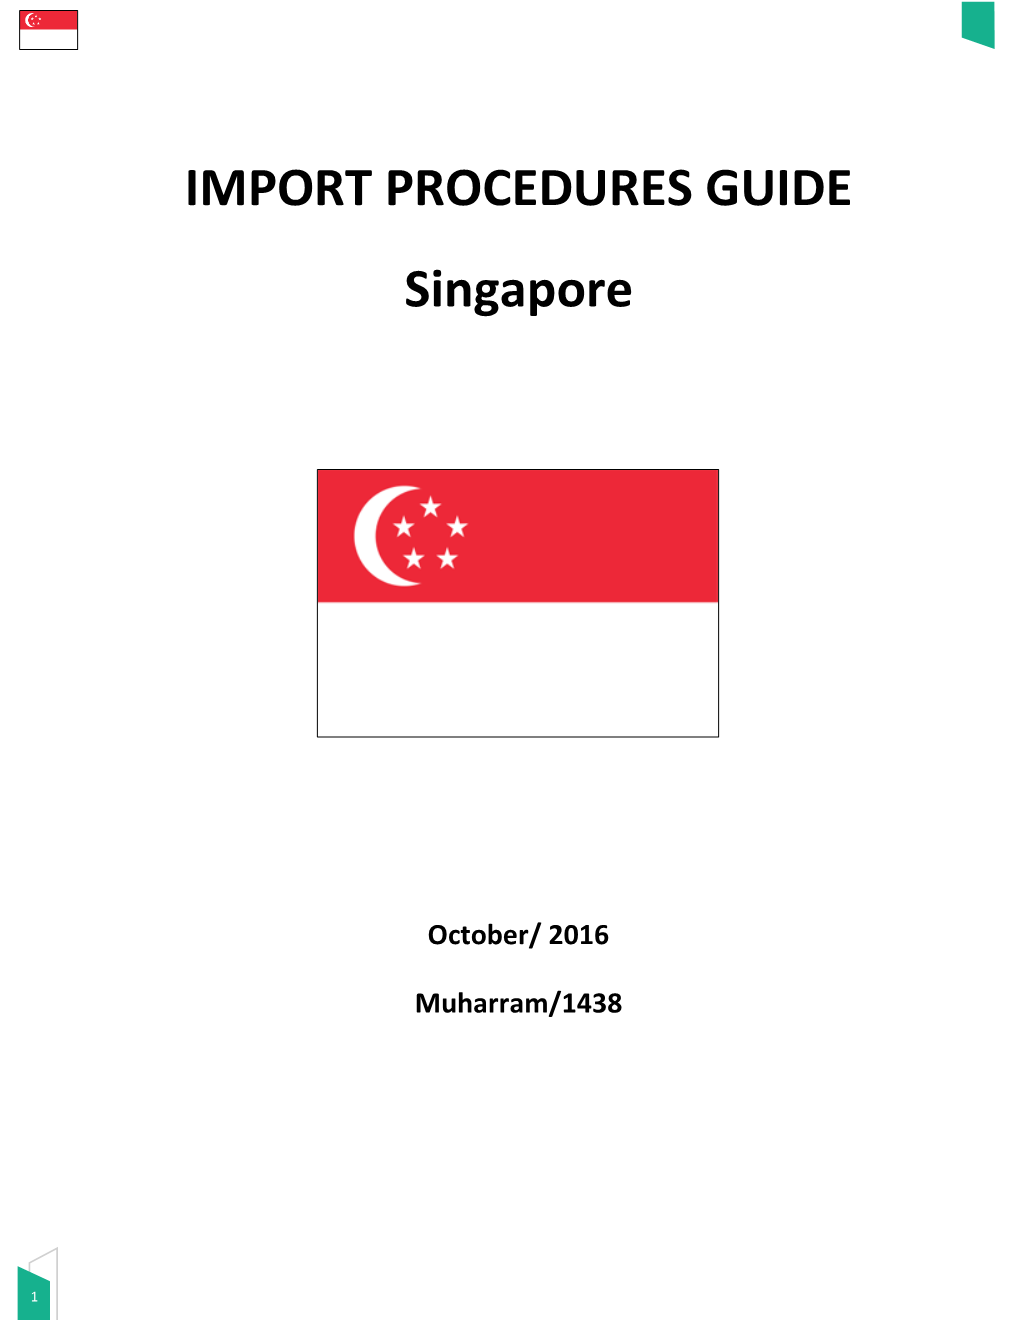 IMPORT PROCEDURES GUIDE Singapore